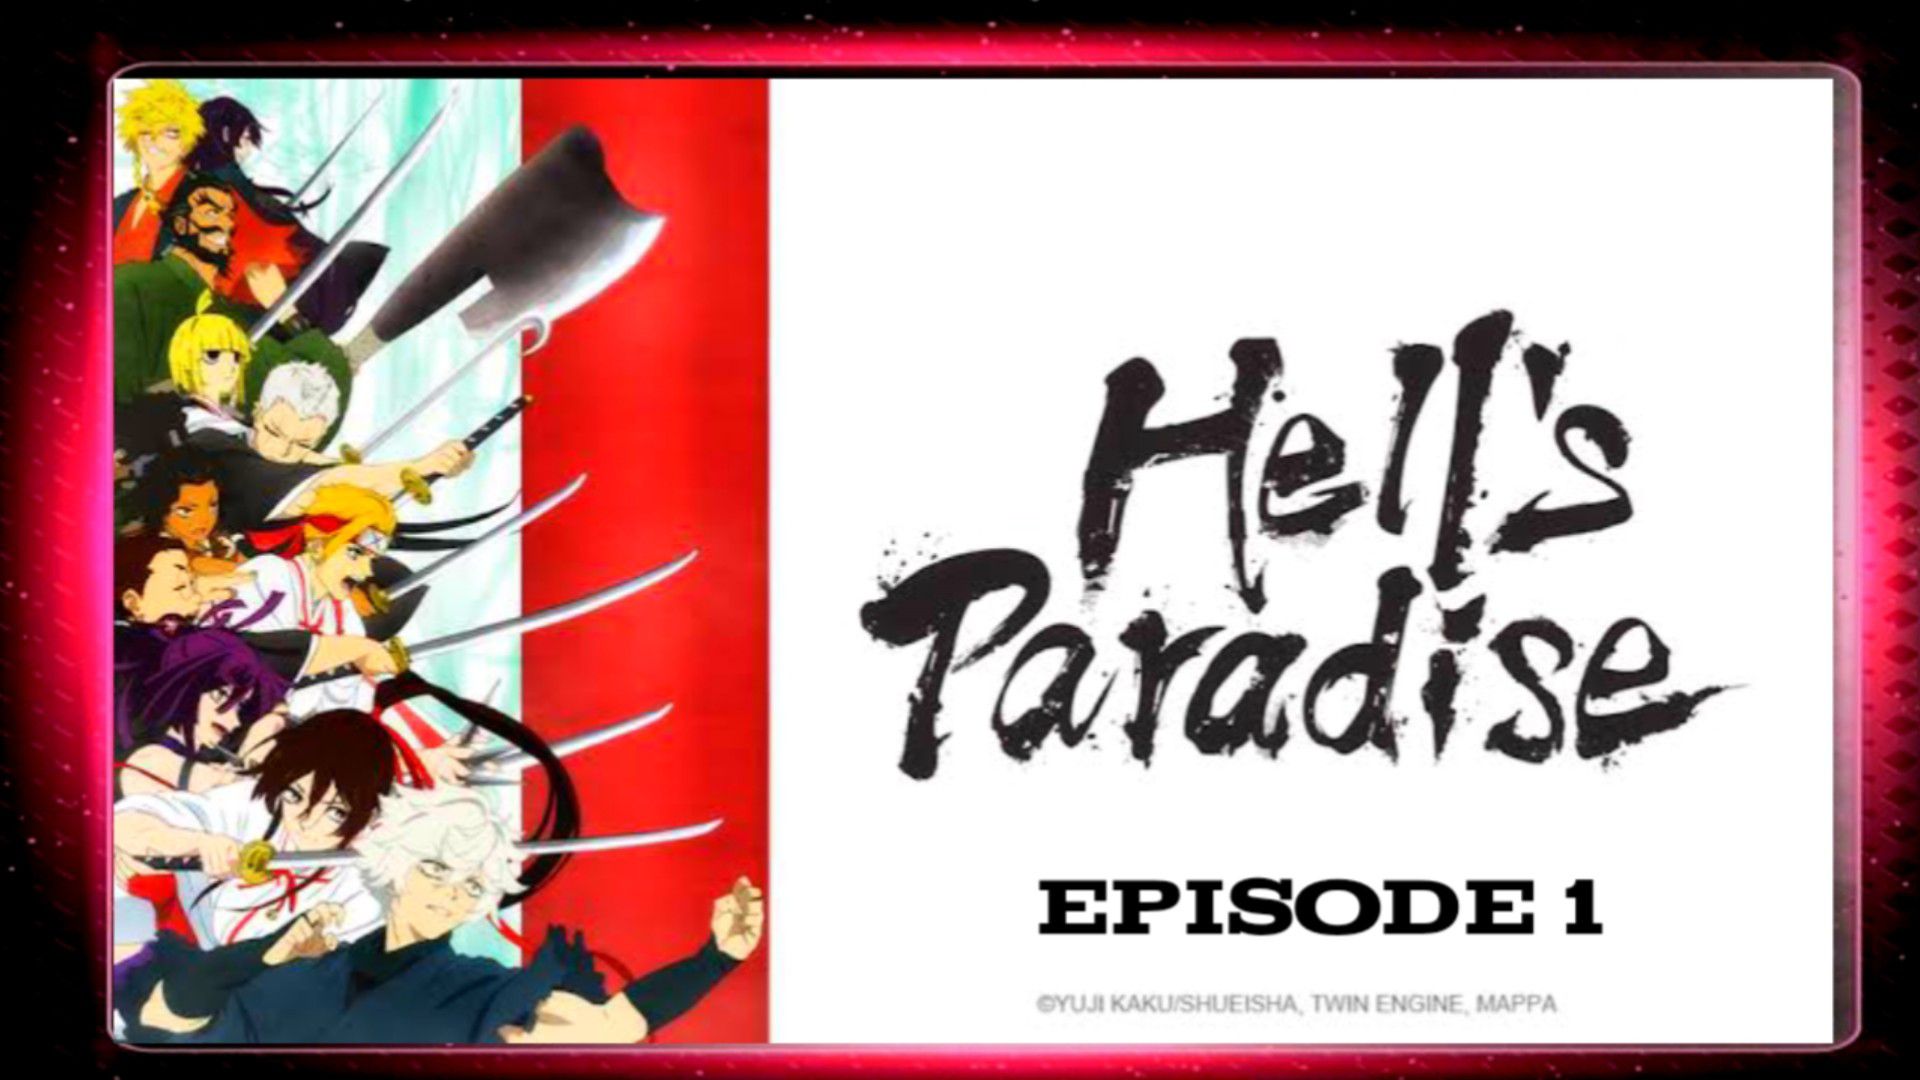 Hell's paradise EP 1 Tagalog sub - BiliBili